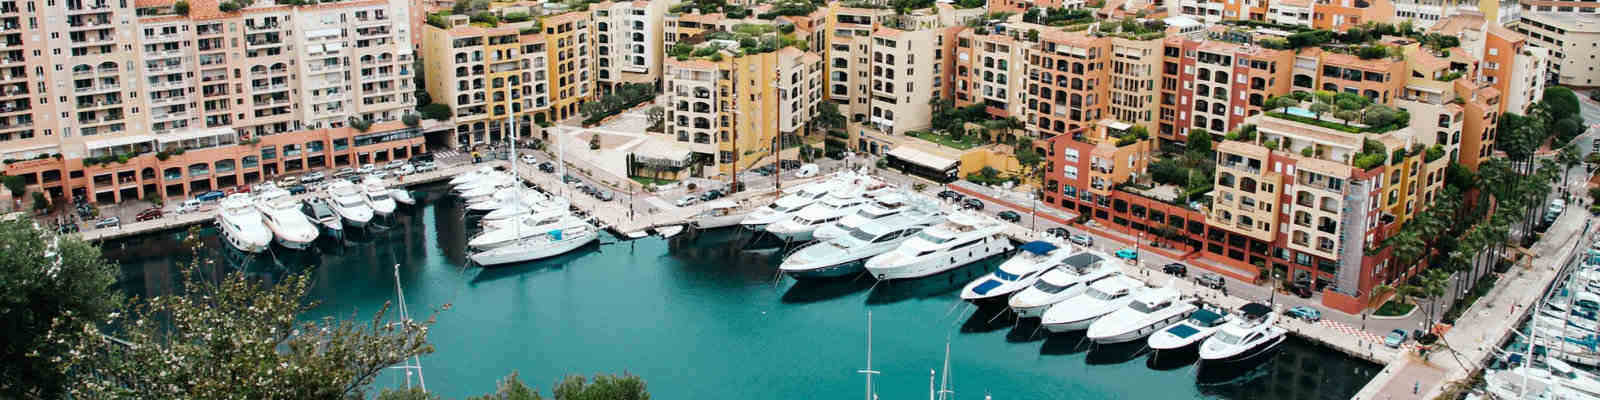 Riviera-yacht-marina